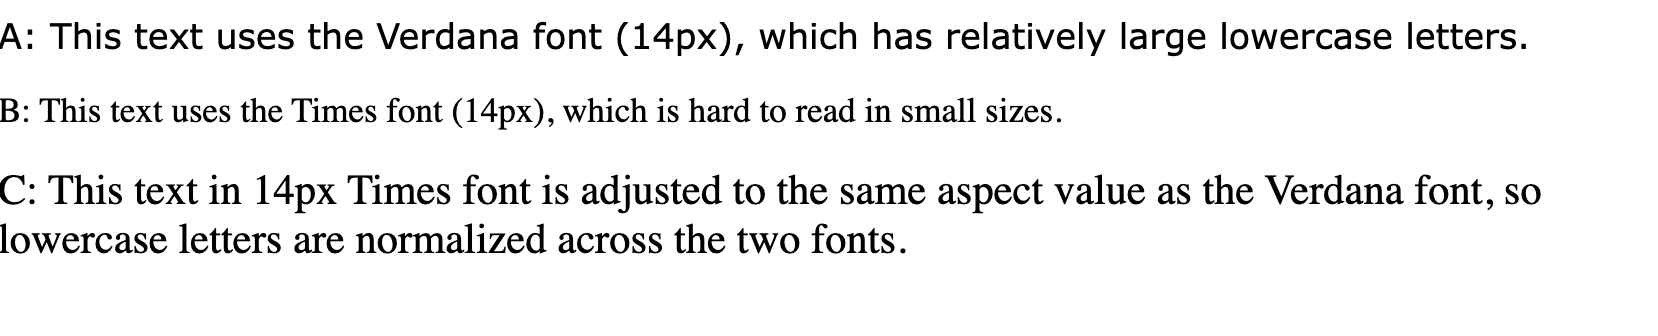 Tekstregels met de tekst 'Deze tekst gebruikt het verdana-lettertype (14px), dat relatief grote kleine letters heeft', 'Hier wordt het Times-lettertype (14px) gebruikt, dat moeilijk leesbaar is in kleine formaten' en 'Deze tekst in het 14px Times-lettertype is aangepast aan dezelfde aspectwaarde als het Verdana-lettertype, dus kleine letters worden genormaliseerd over de twee lettertypen